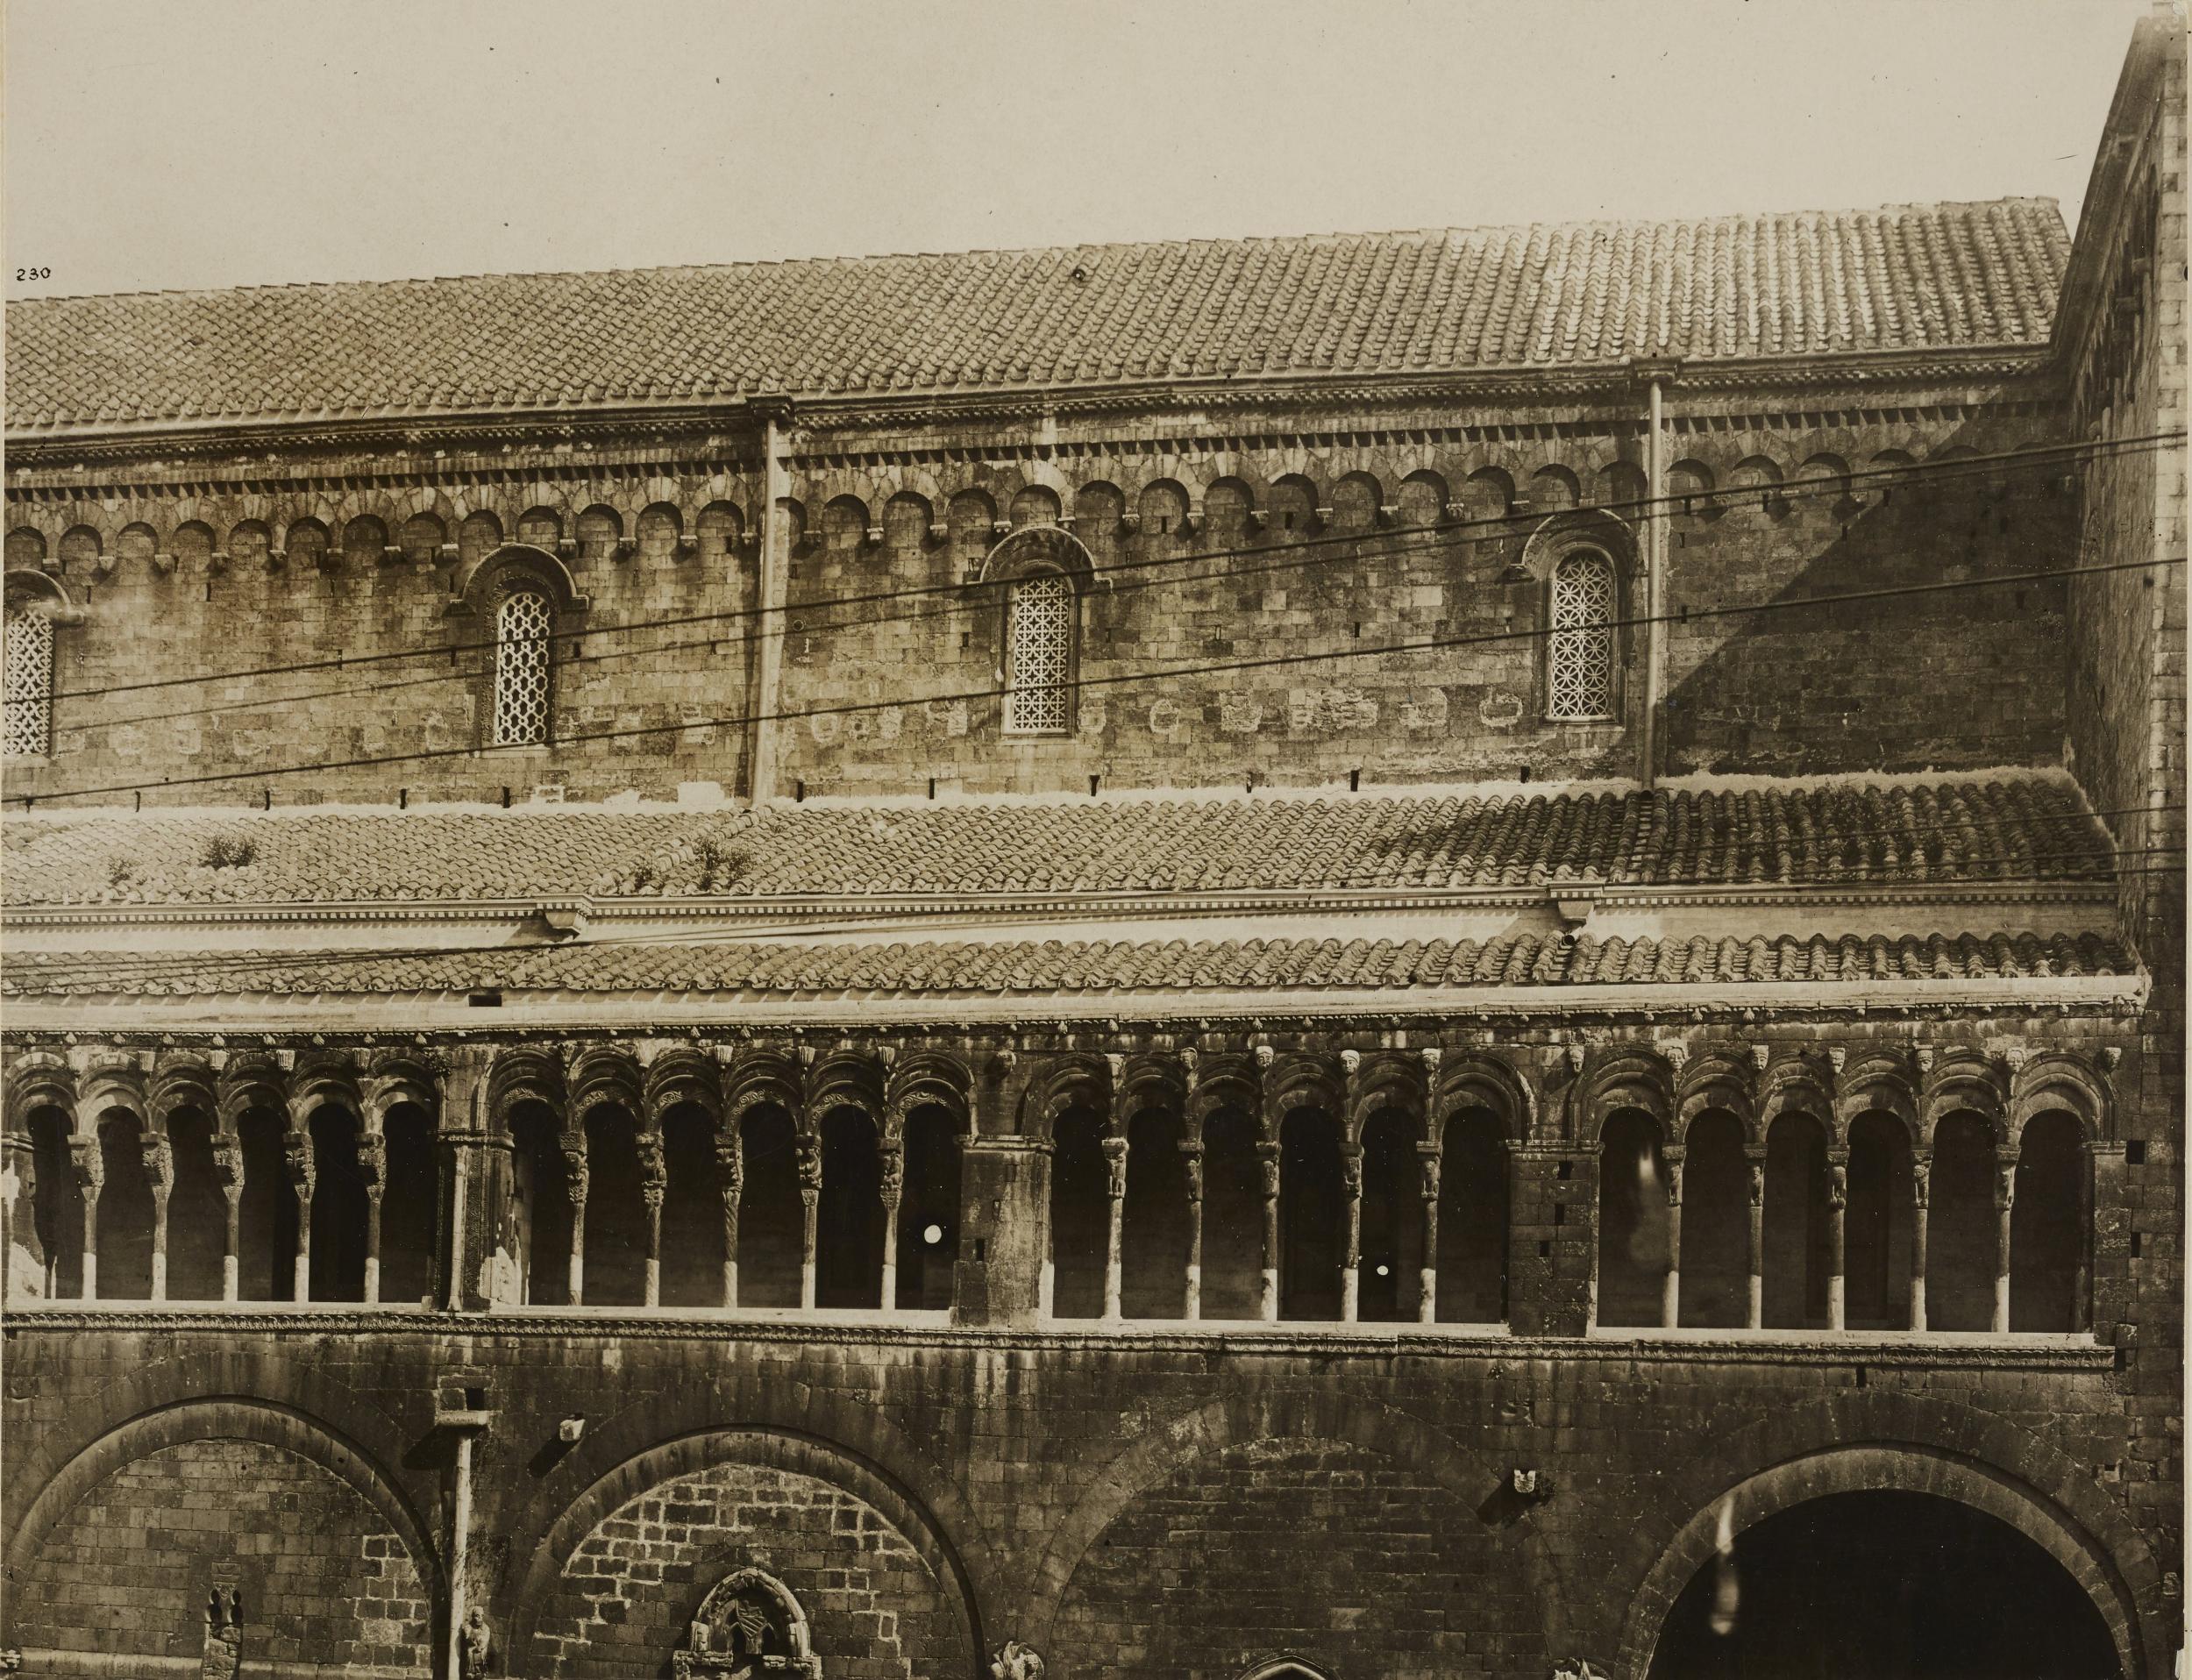 Fotografo non identificato, Bitonto - Cattedrale di S. Valentino, fianco destro esterno, loggiato e esafore, 1901-1925, gelatina ai sali d'argento/carta, MPI137838